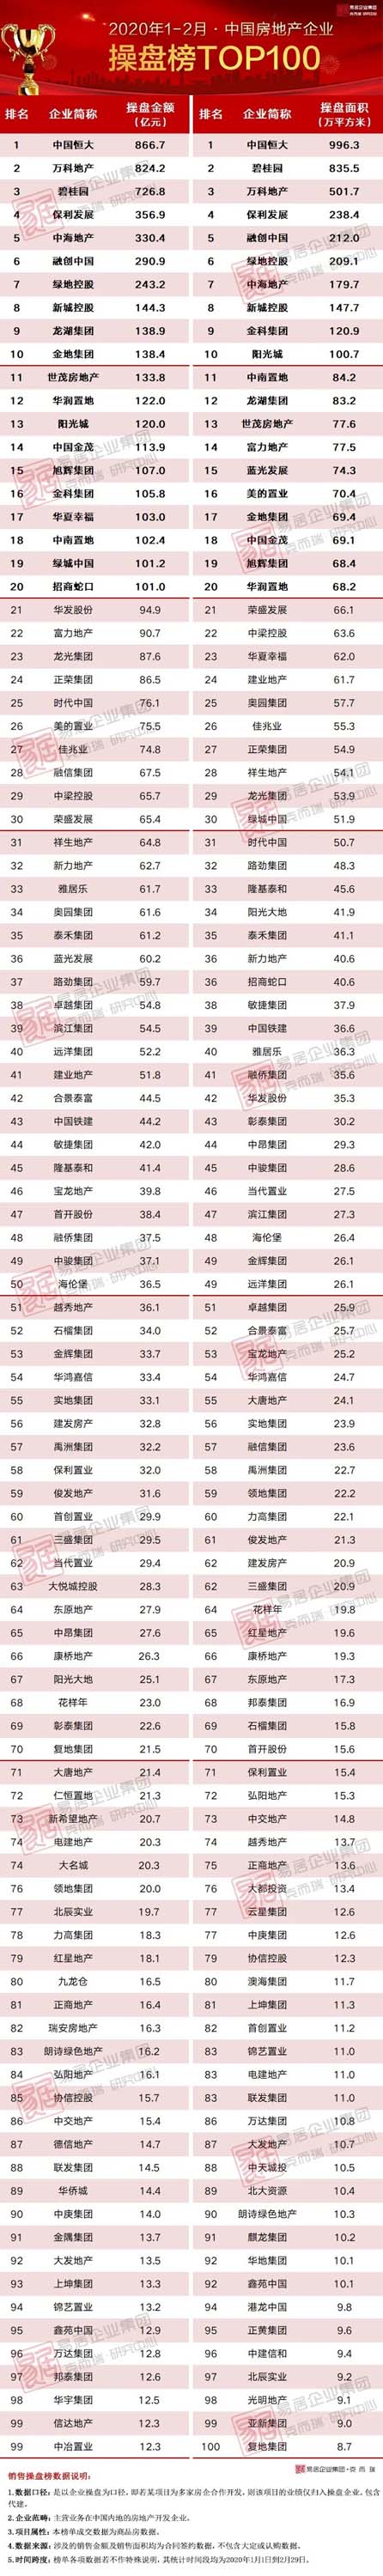 1-2月中国房地产企业操盘榜TOP100